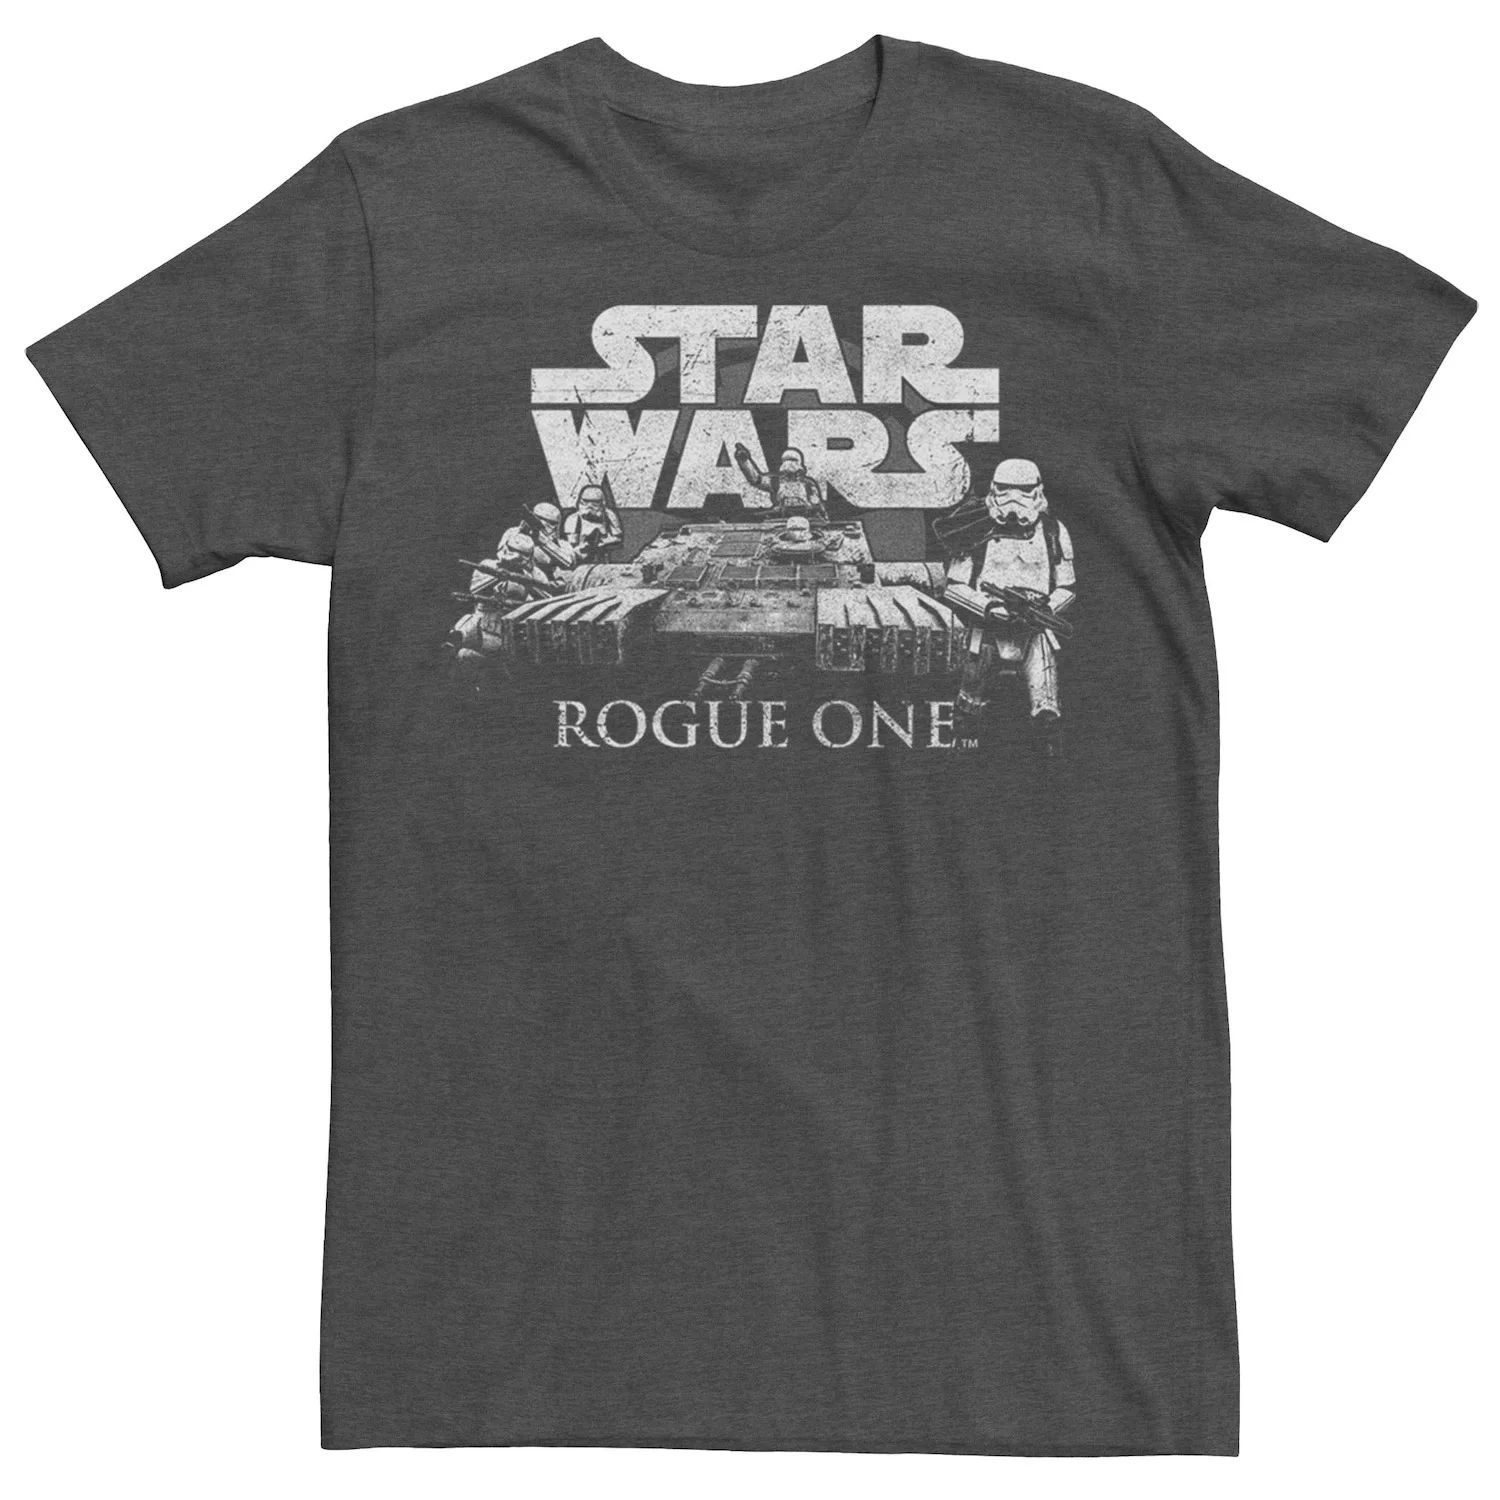 Мужская футболка с логотипом Star Wars Rogue One Troopers мужская красная футболка с логотипом rogue one rogue one star wars